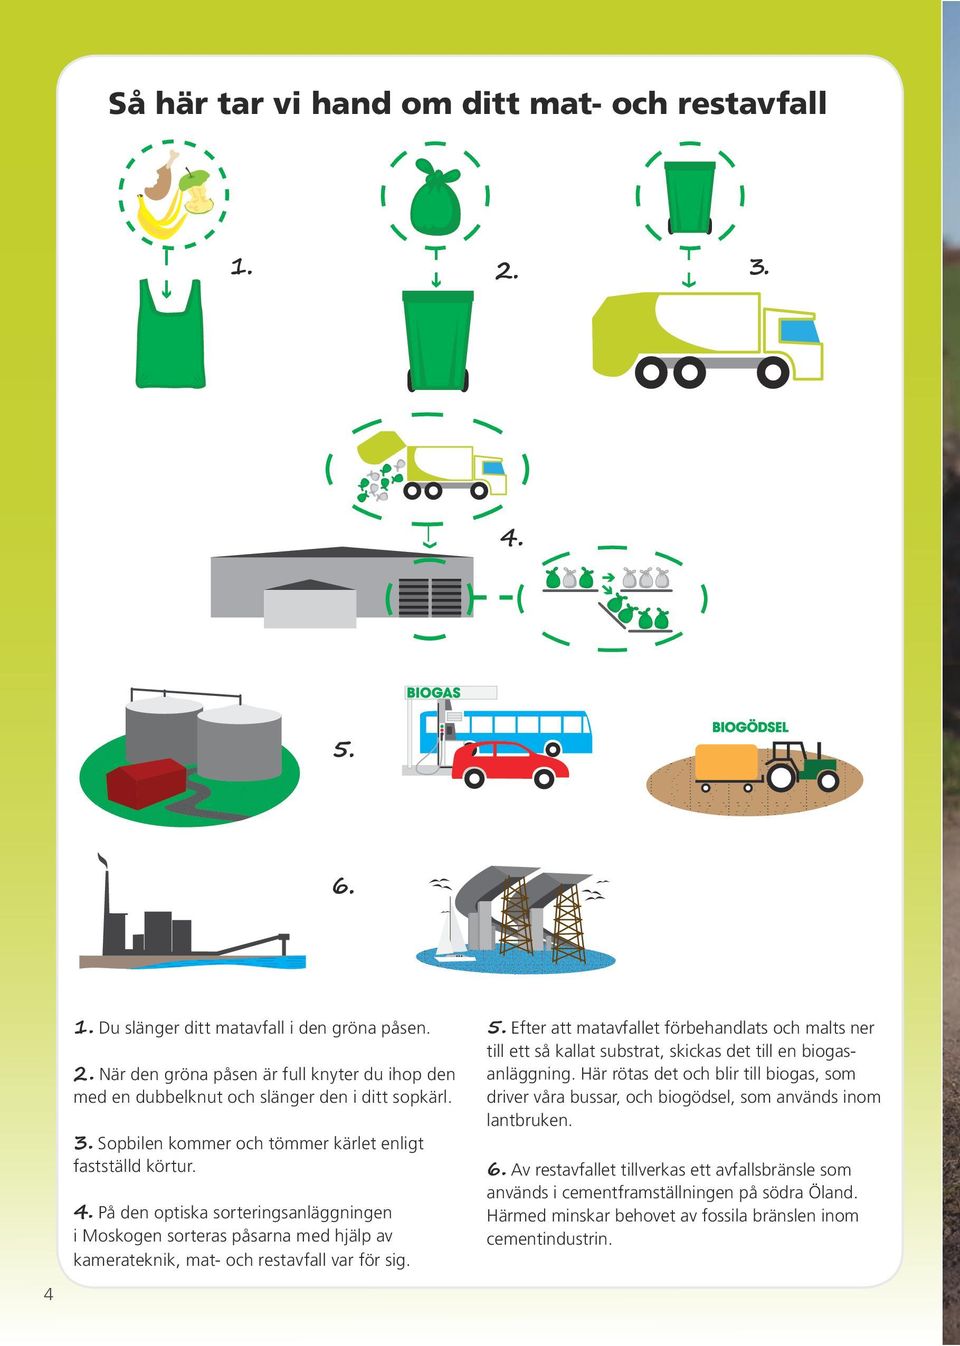 Efter att matavfallet förbehandlats och malts ner till ett så kallat substrat, skickas det till en biogasanläggning.